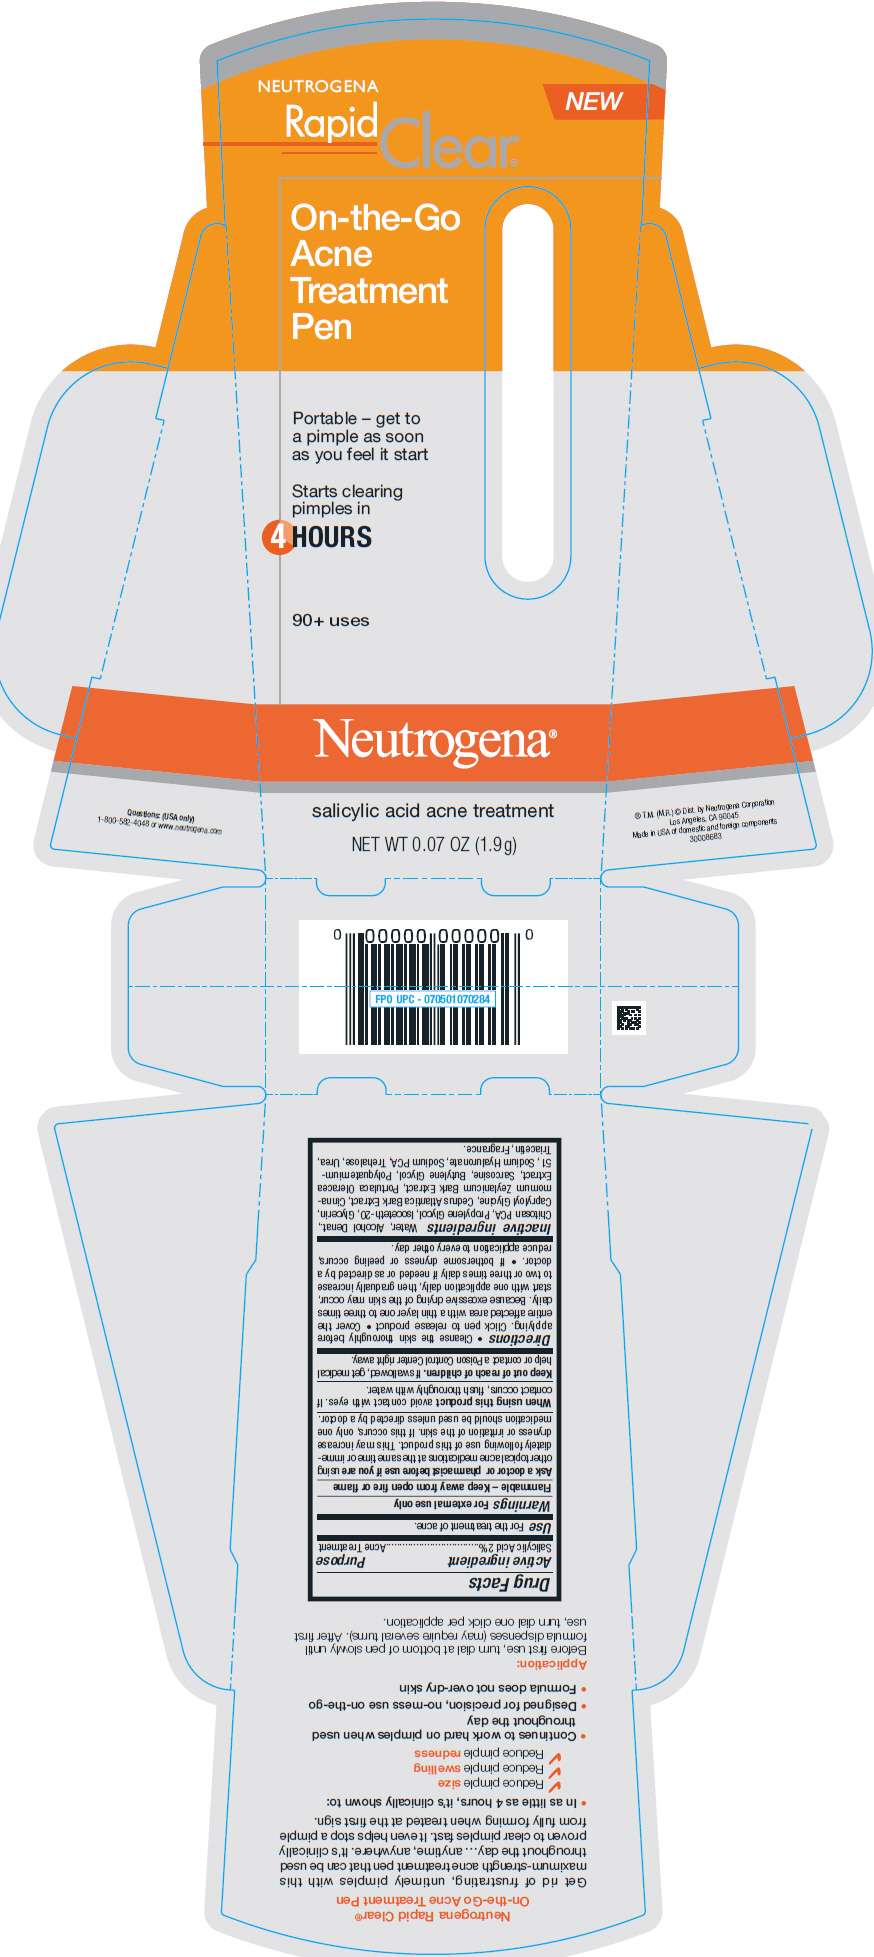 Neutrogena Rapid Clear